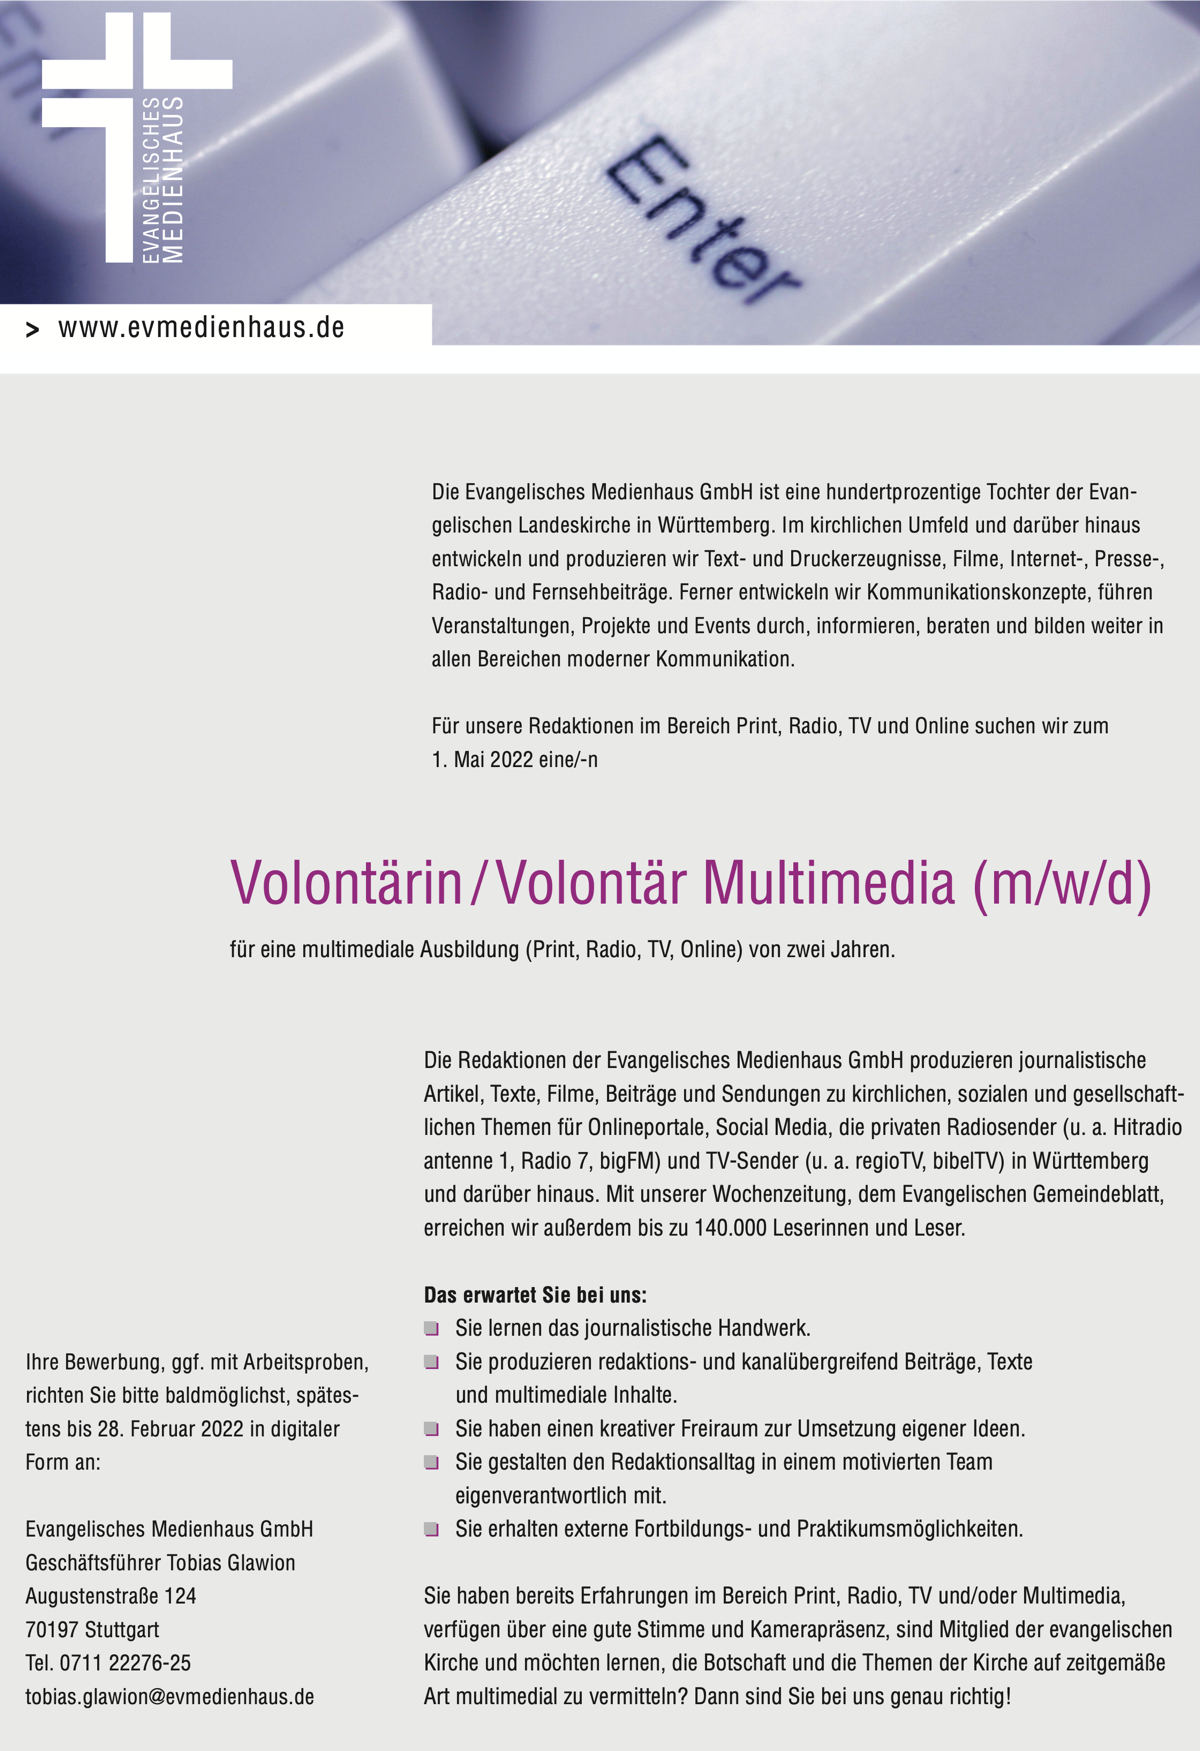 Evangelisches Medienhaus Volontariat Multimedia 170122